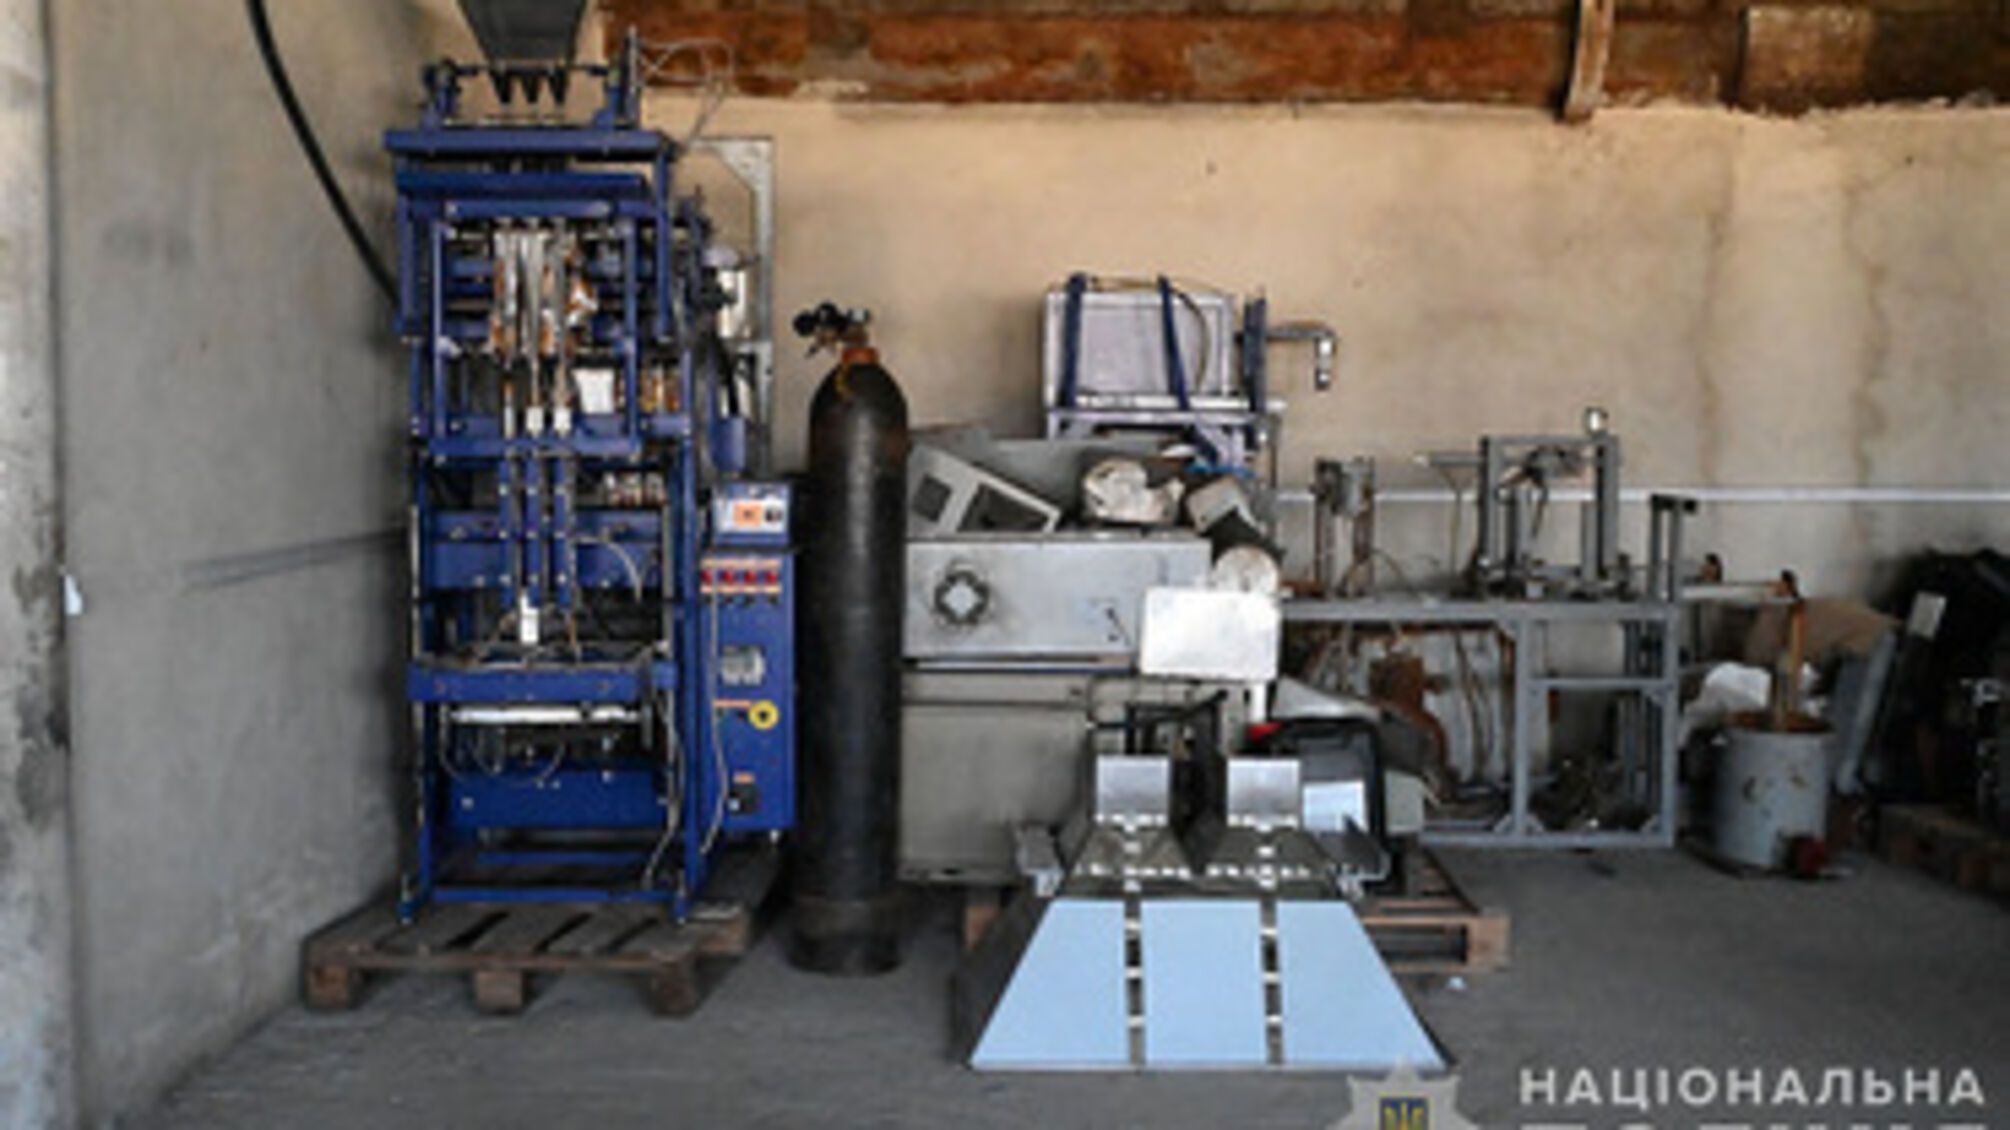 В Николаевской области разоблачили незаконный цех по производству приправ и кофе